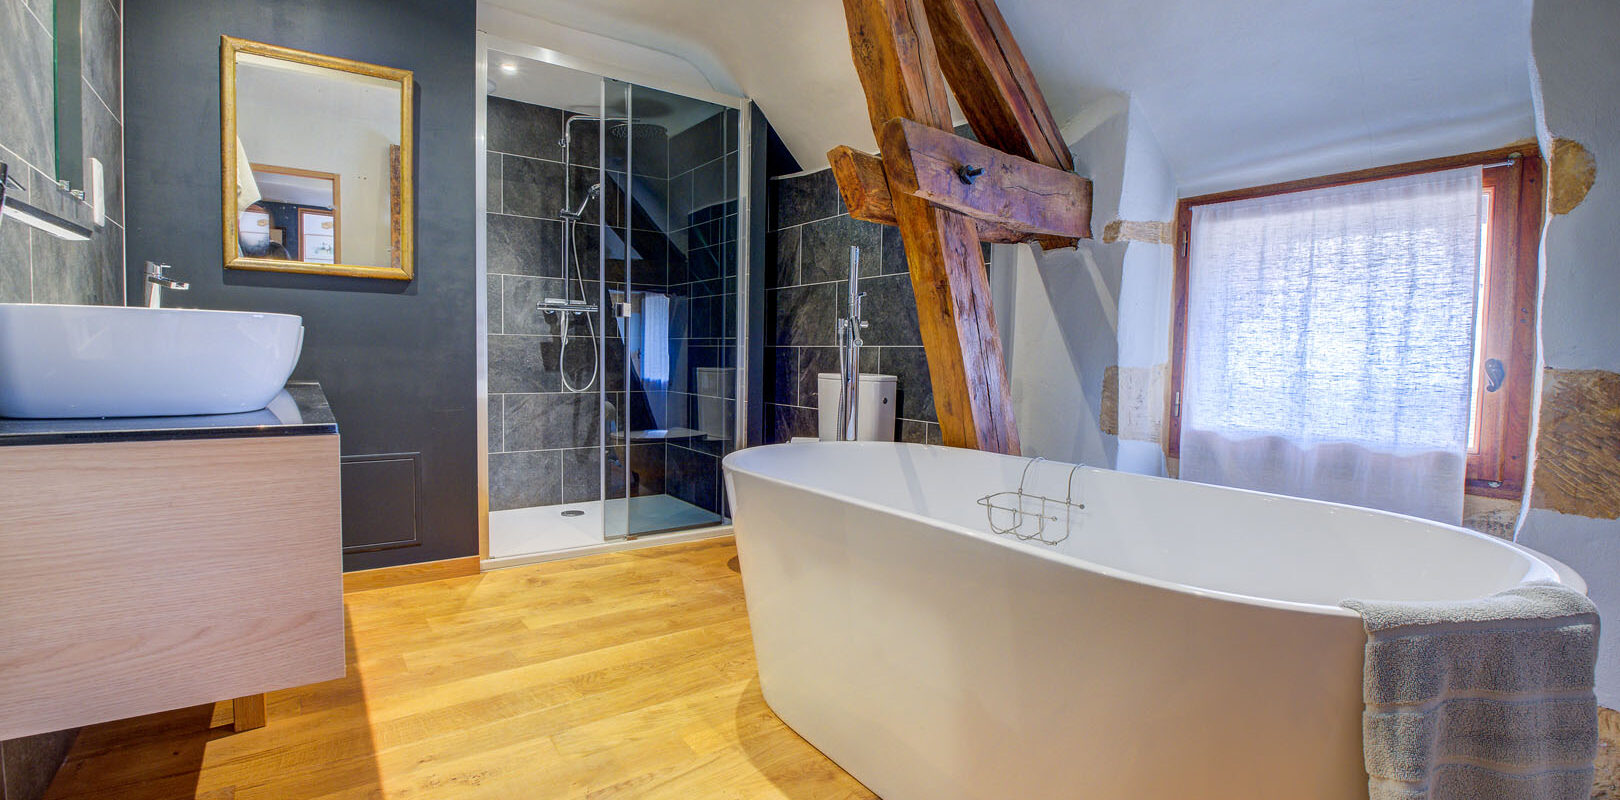 Une salle de bain du gîte Lescarpediem à Meyrals, by Peridoors